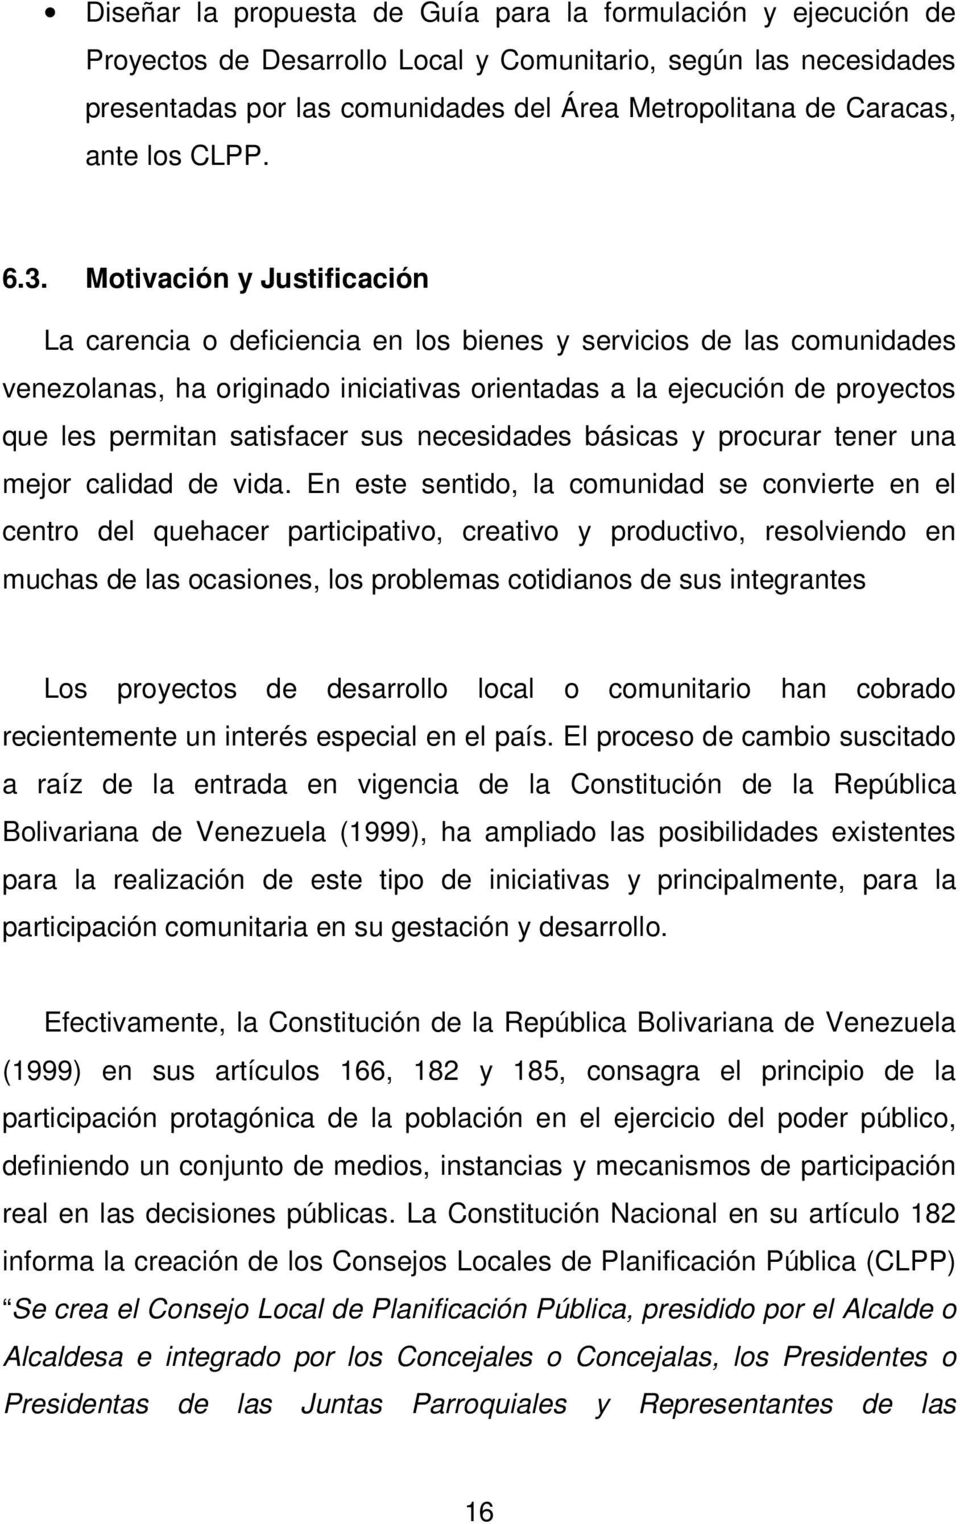 Motivación y Justificación La carencia o deficiencia en los bienes y servicios de las comunidades venezolanas, ha originado iniciativas orientadas a la ejecución de proyectos que les permitan